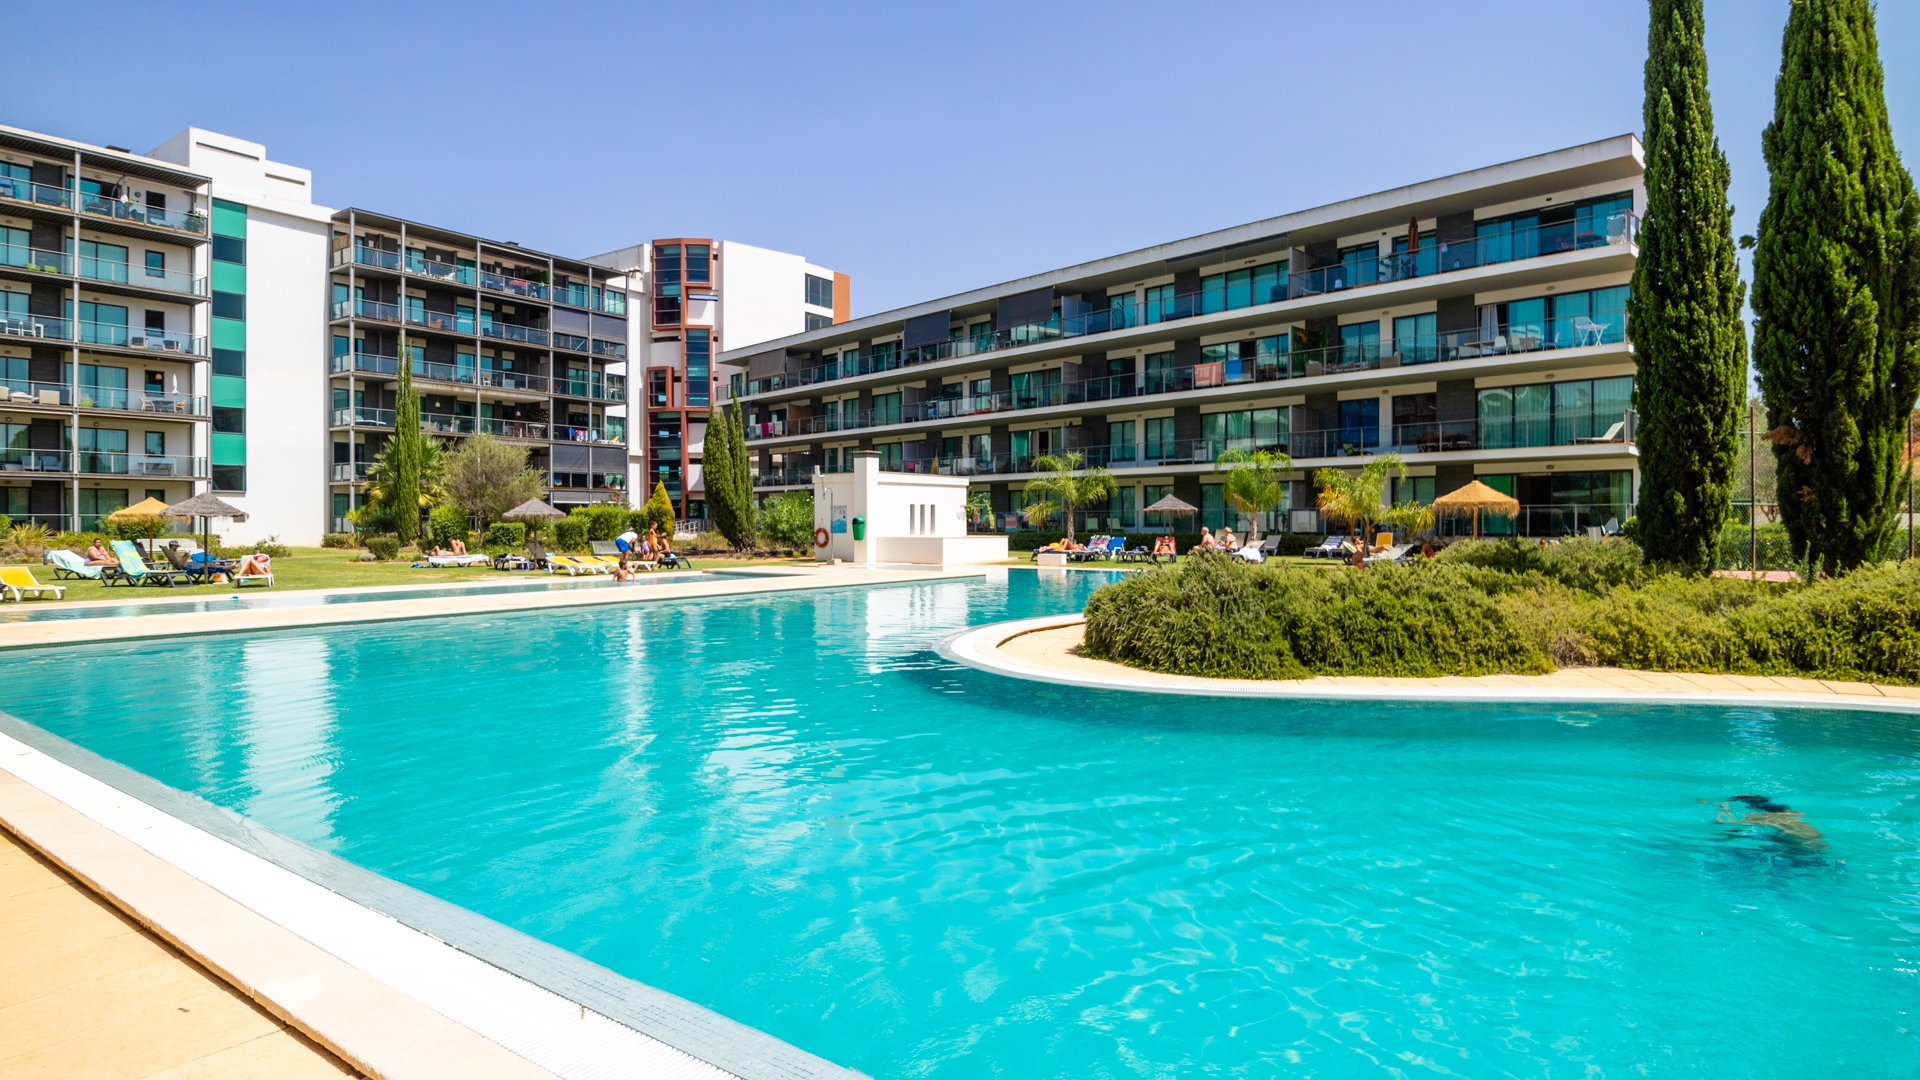 Apartamento moderno com 2 quartos, piscina e vistas para o jardim, Vilamoura | VM2163 Apartamento moderno no rés do chão com grande terraço localizado perto de Vilamoura e de alguns dos seus melhores campos de golfe.